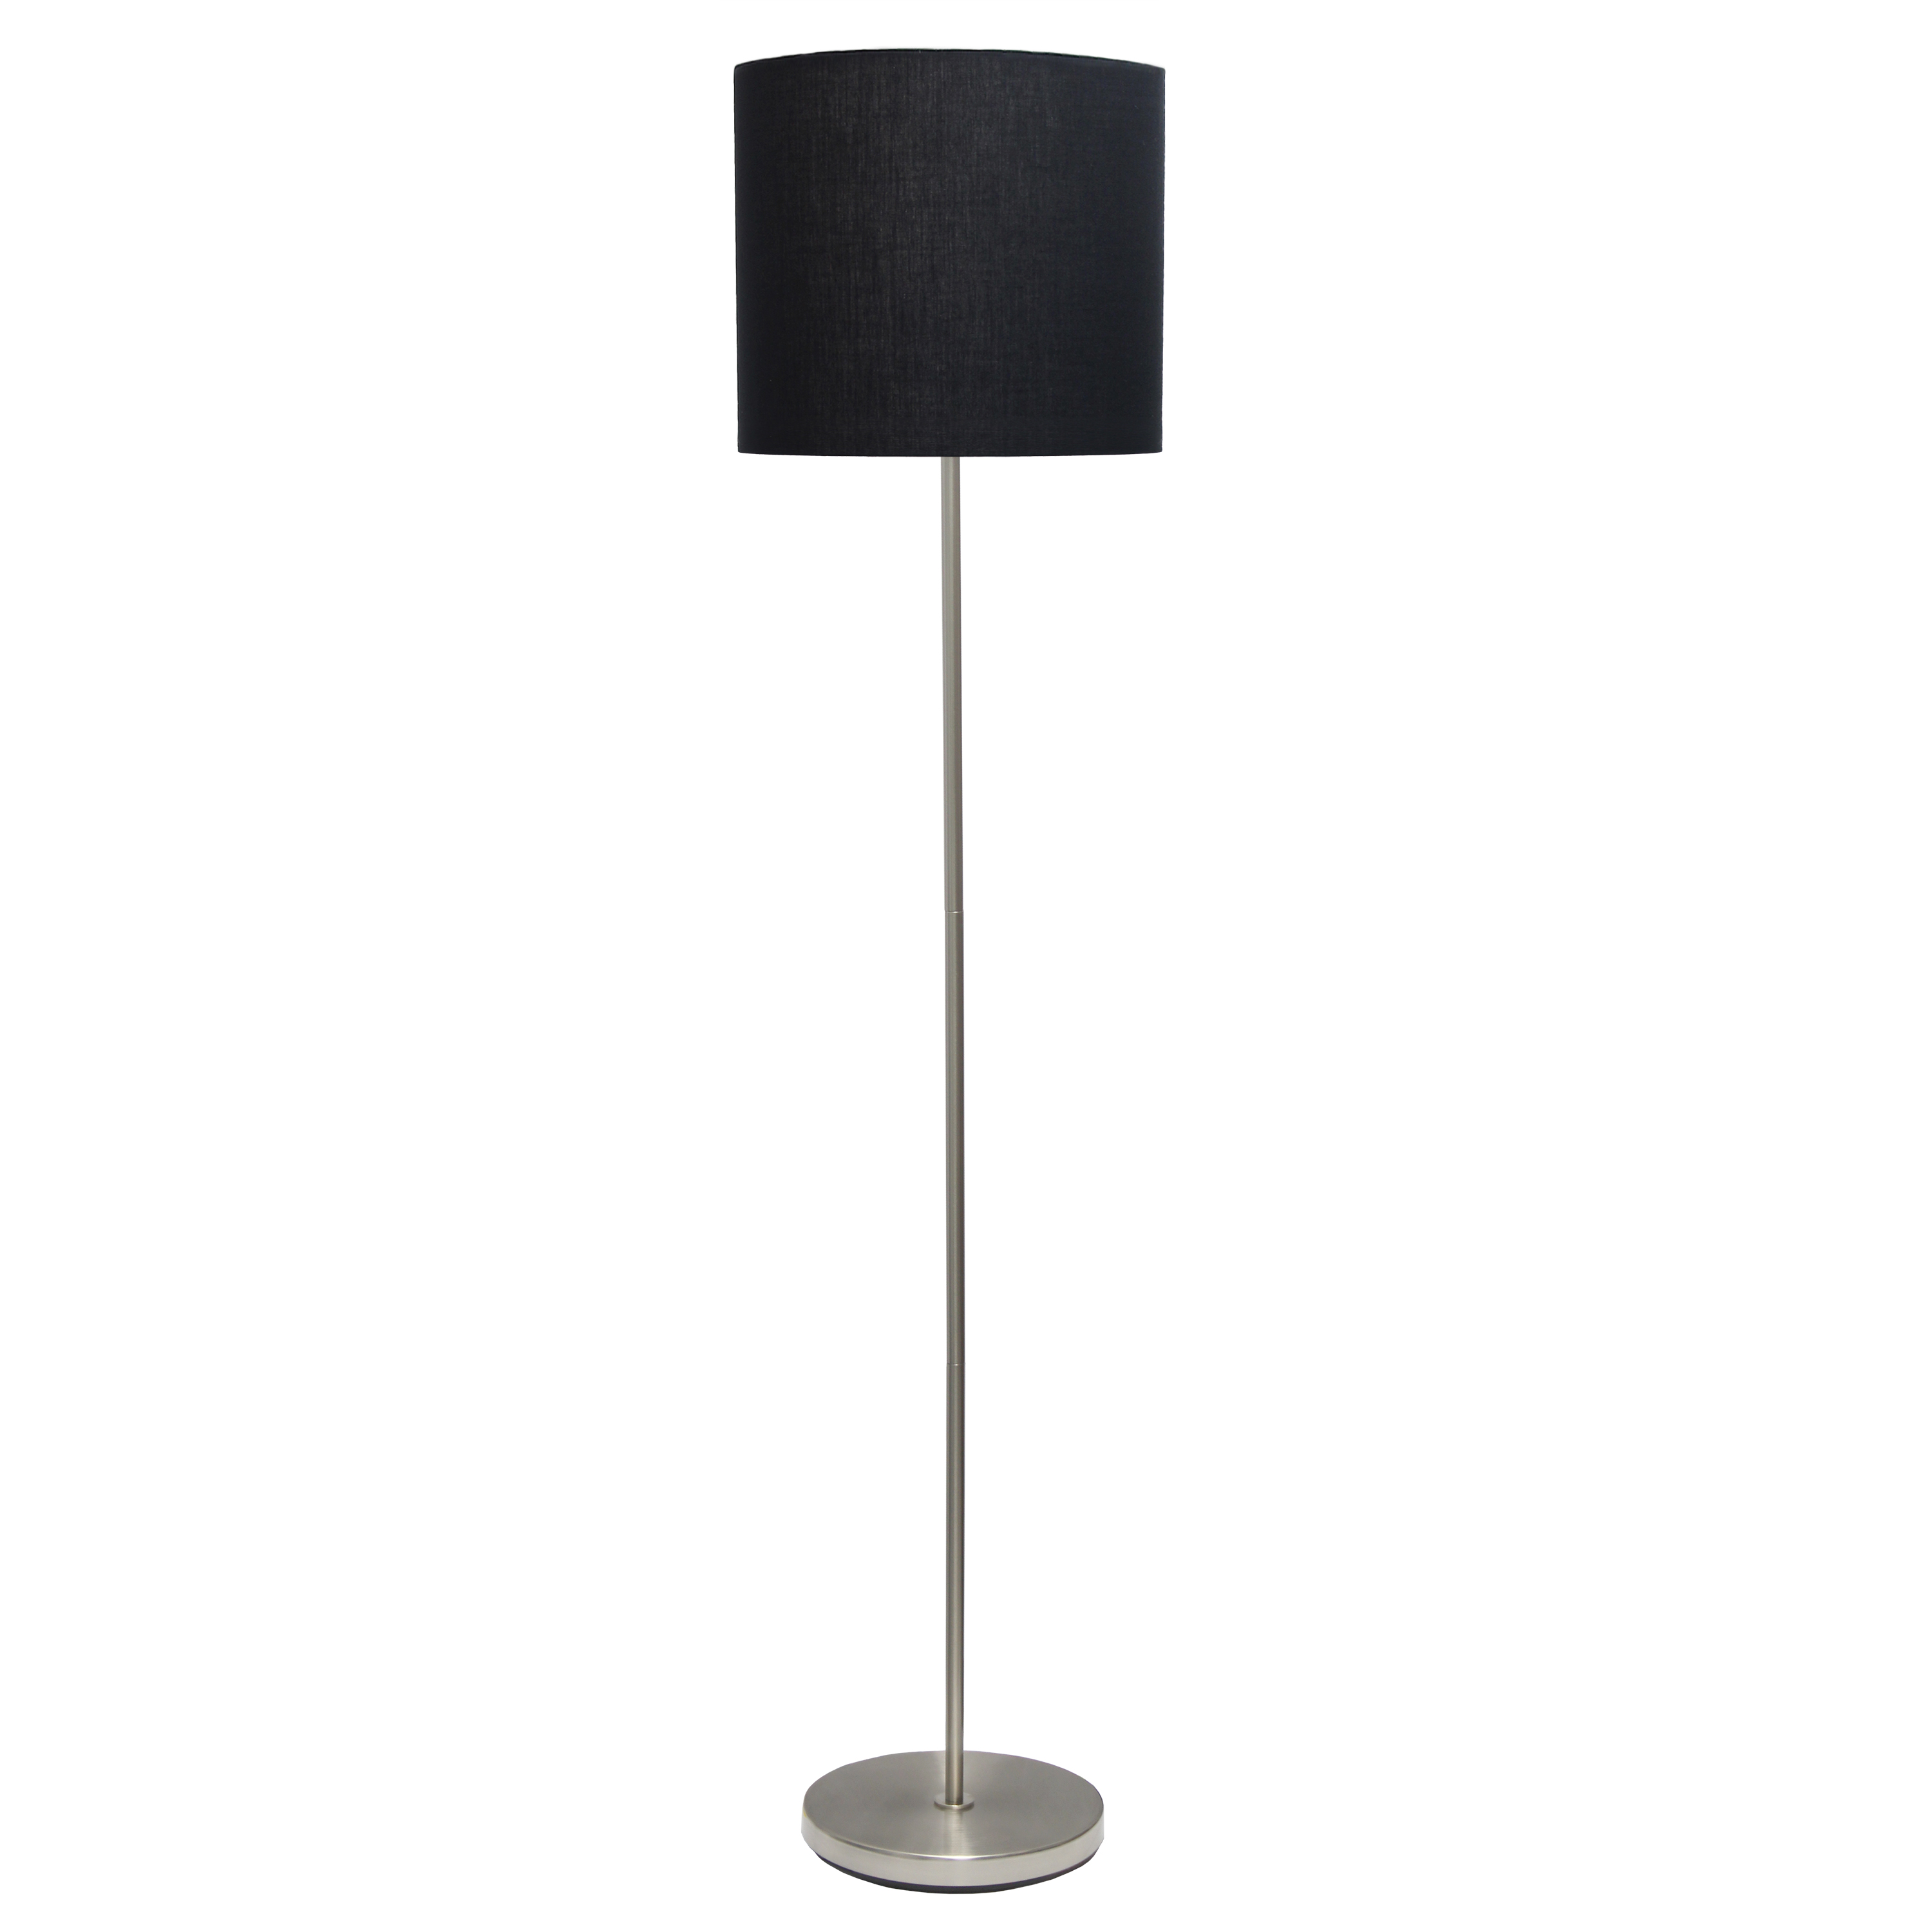 Simple Designs Brushed NIckel Drum Shade Floor Lamp, Black